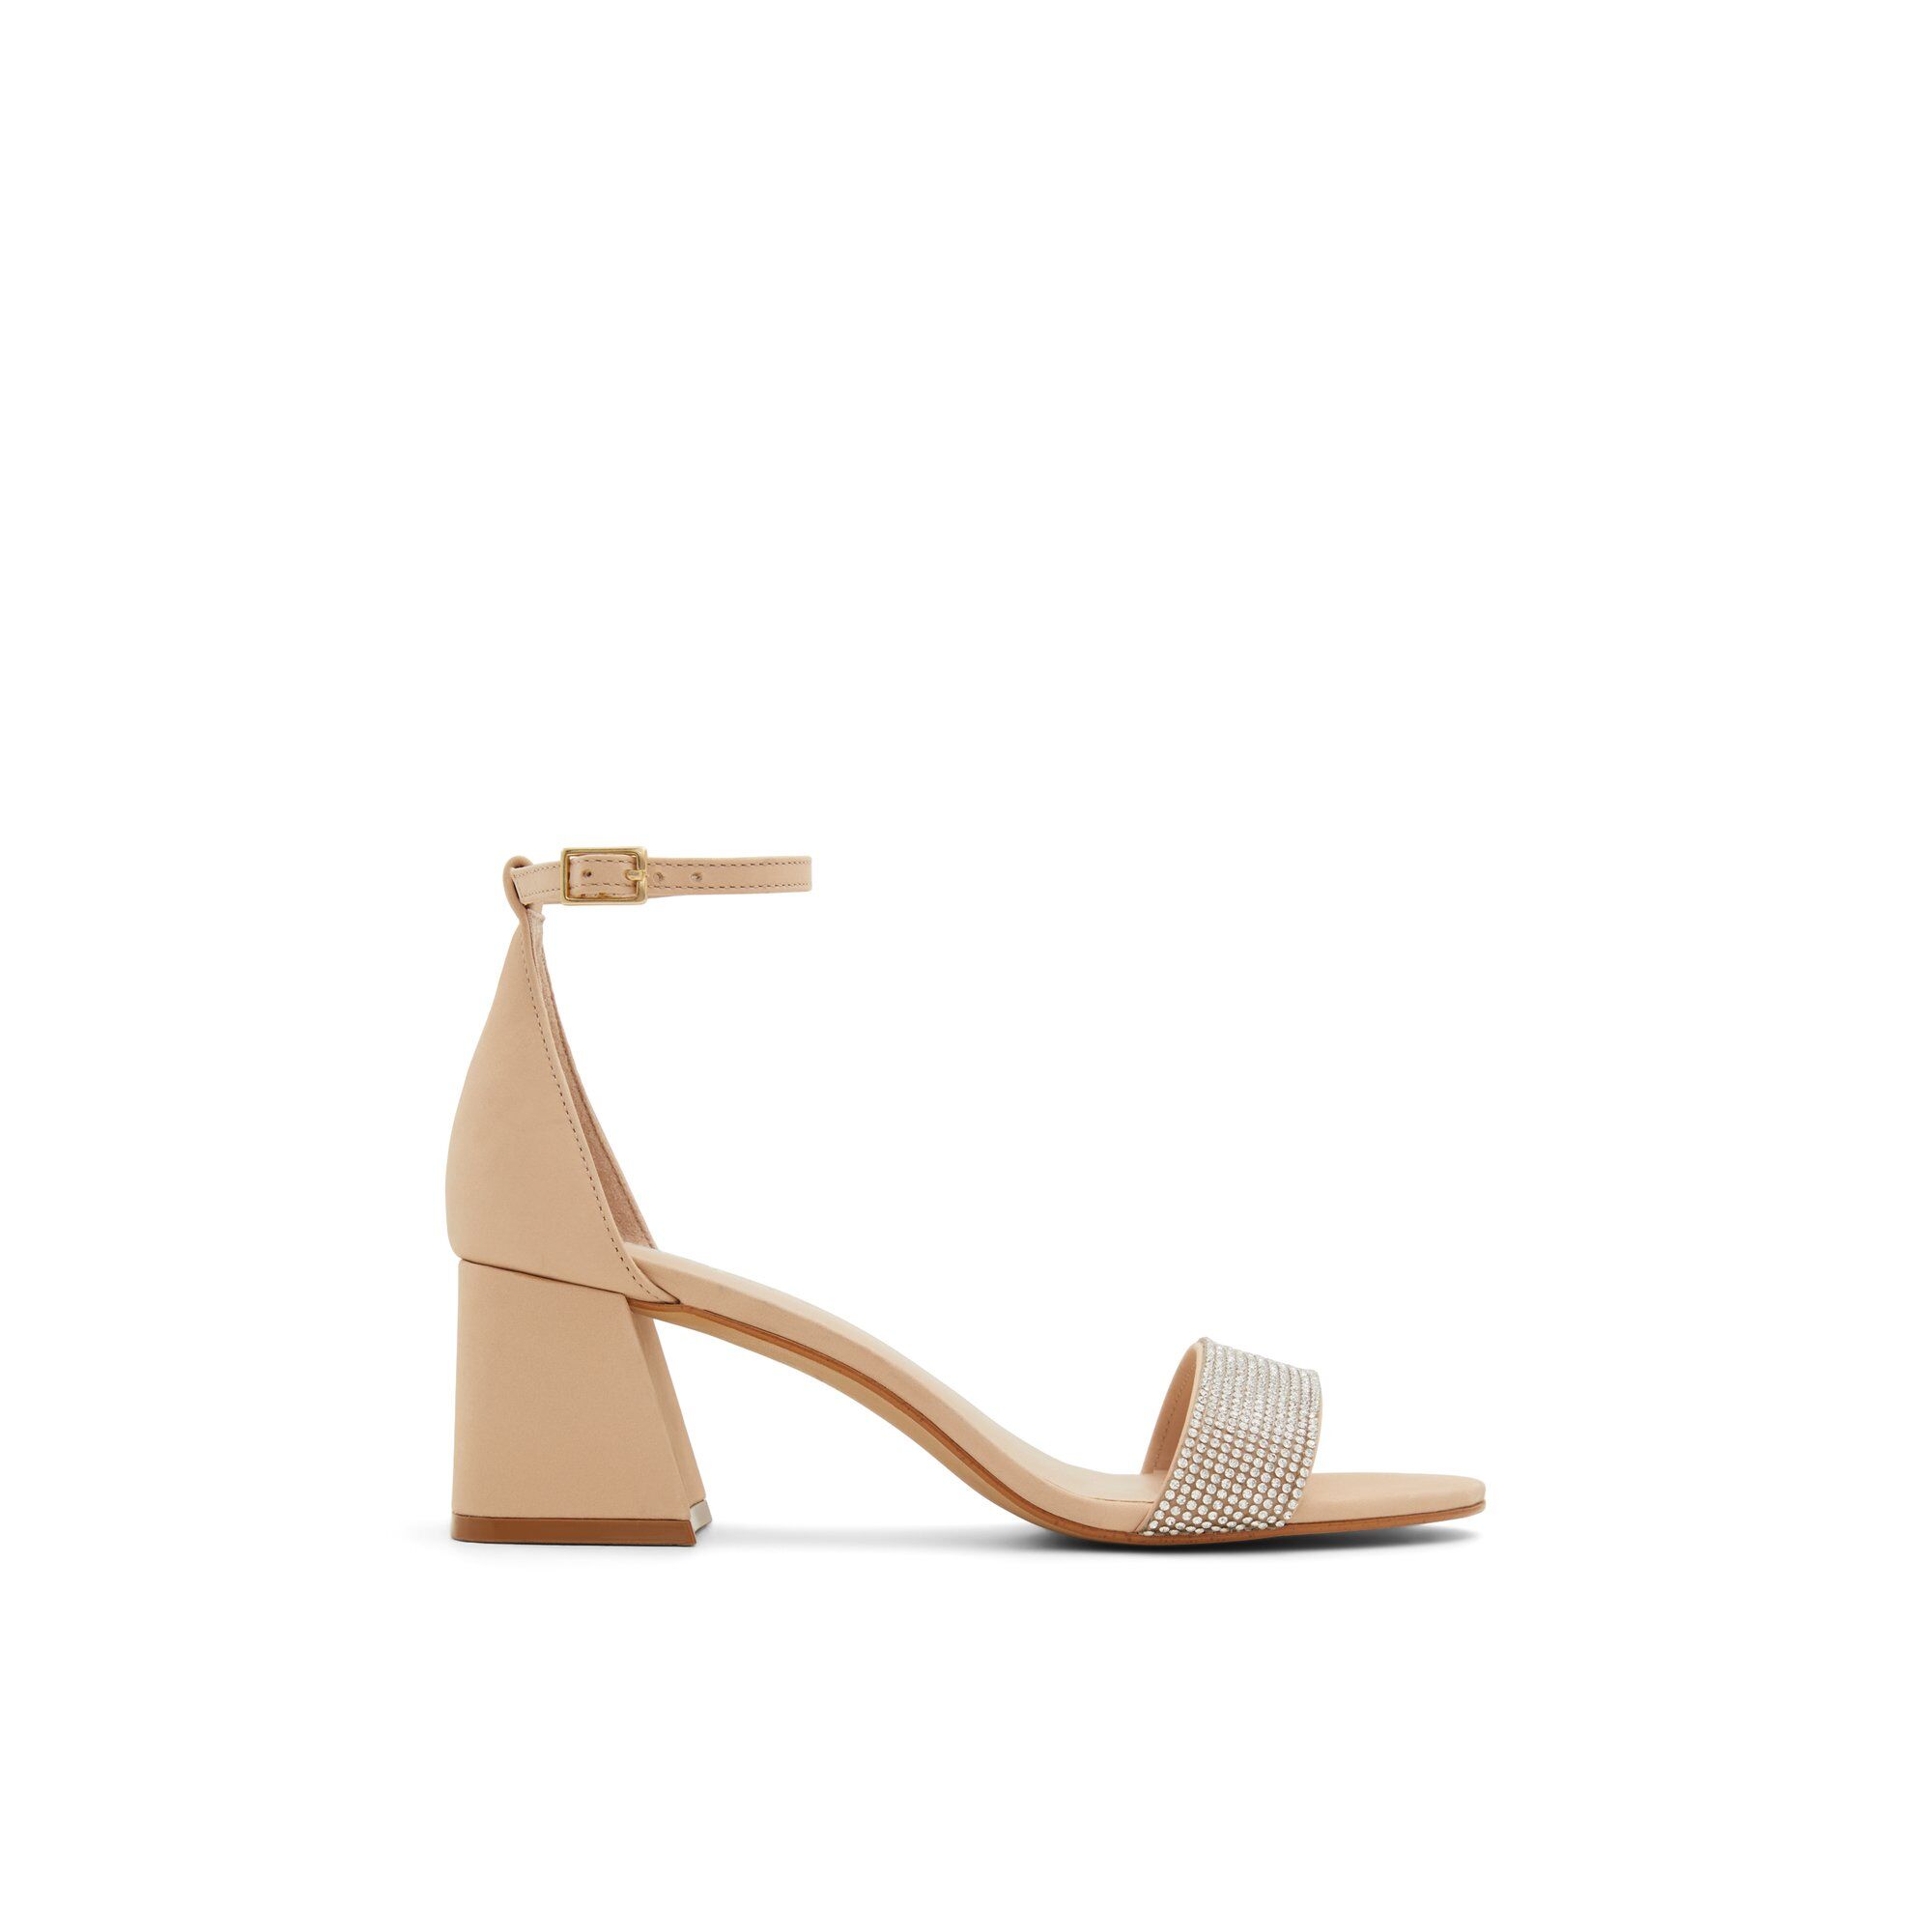 ALDO Formigoni - Women's Sandal - Beige, Size 7.5